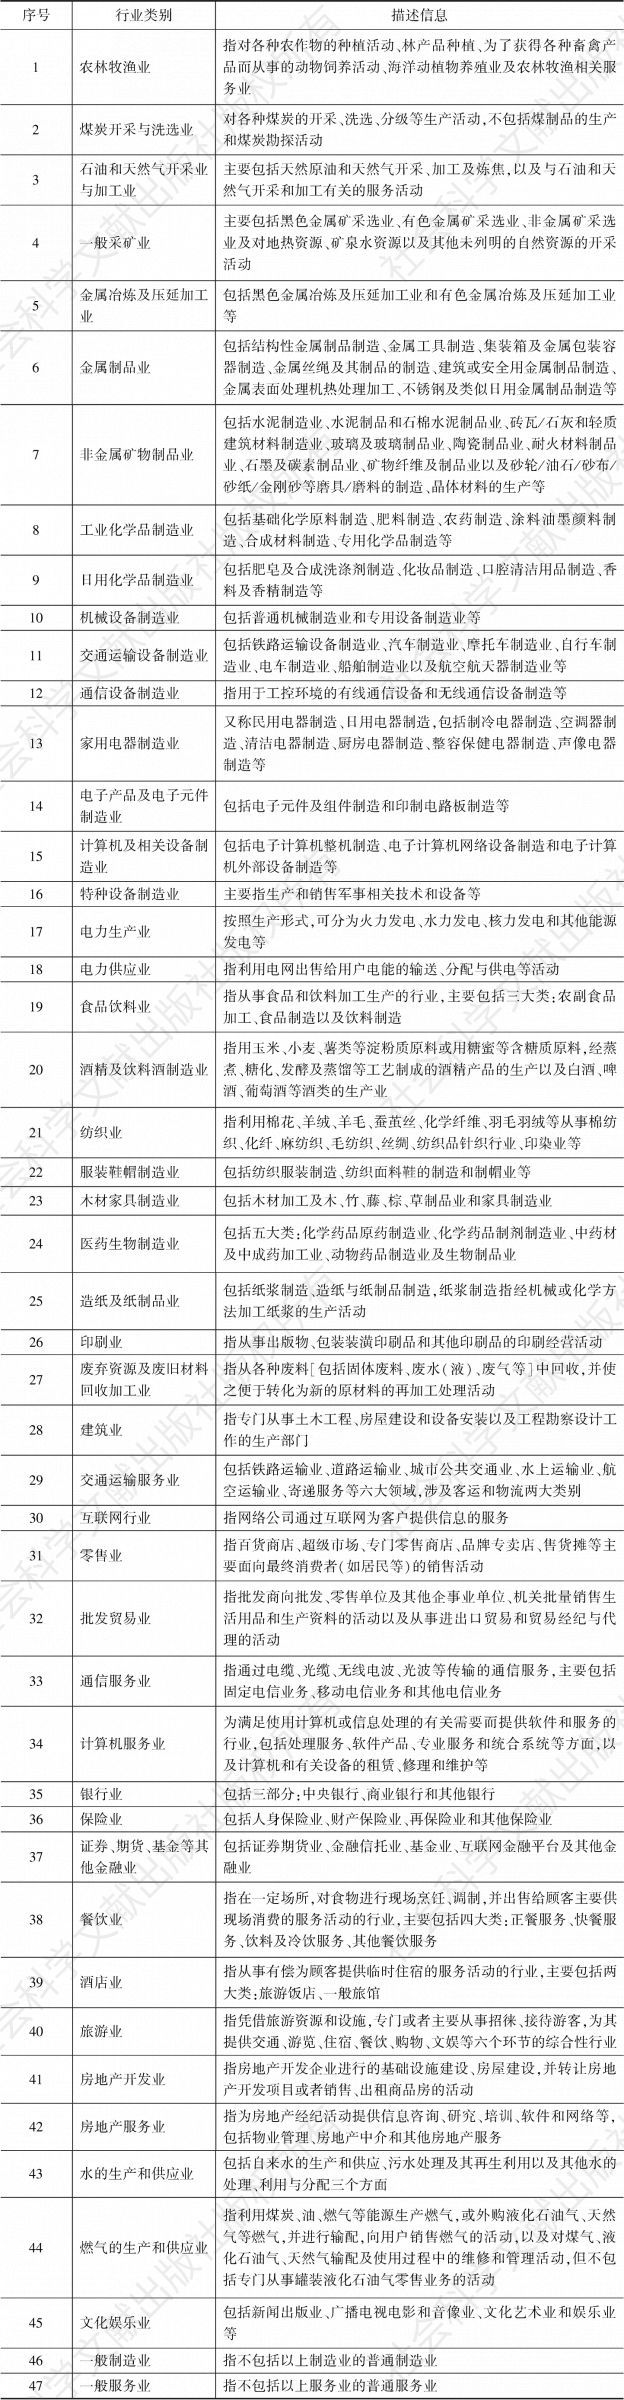 表1 中国企业社会责任发展指数行业划分标准